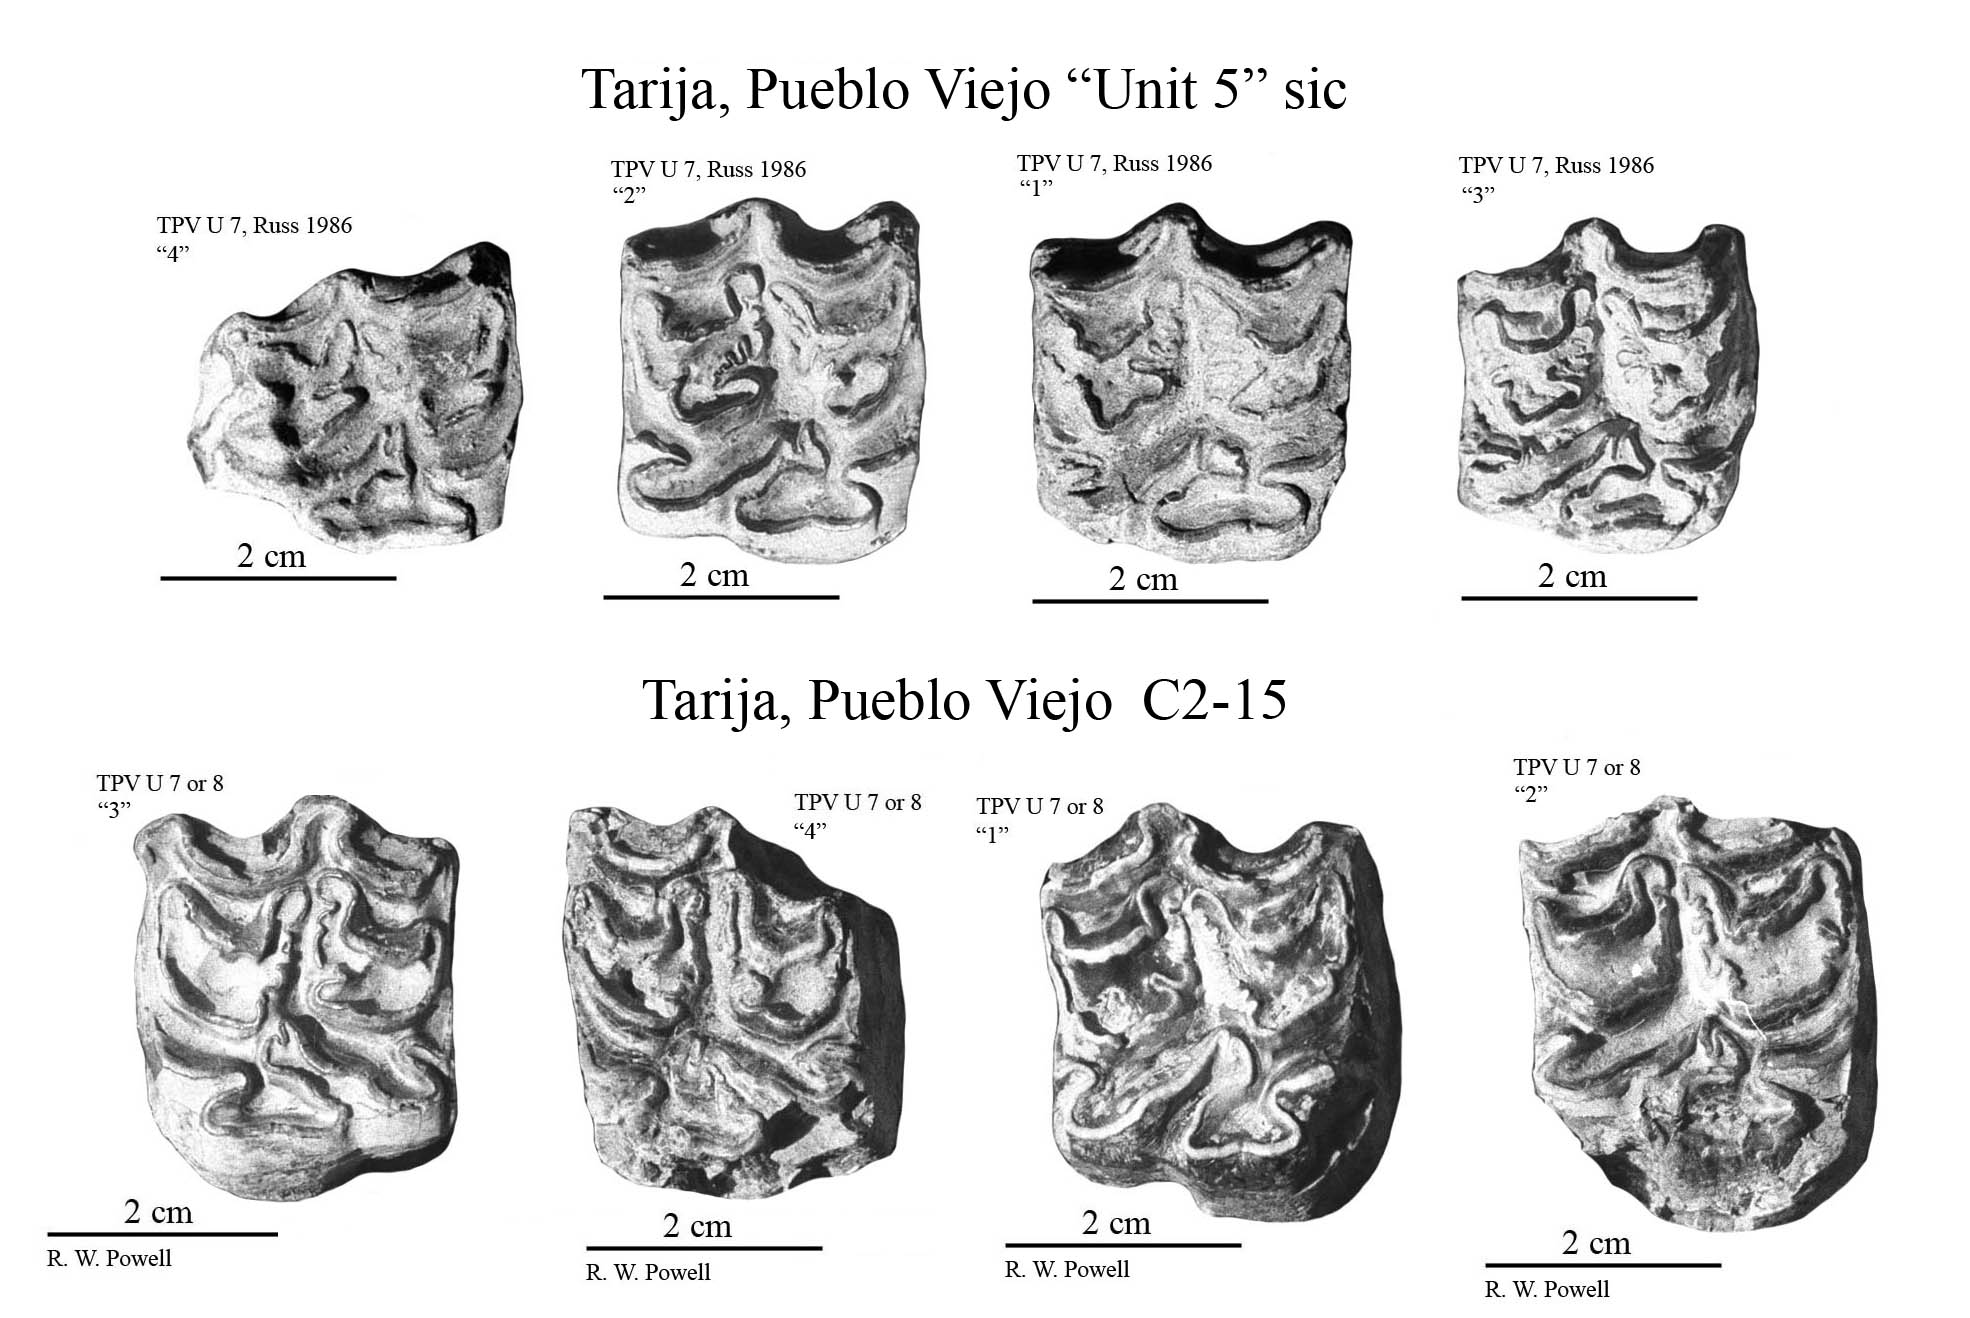 Pueblo Viejo Upper cheek teeth photos